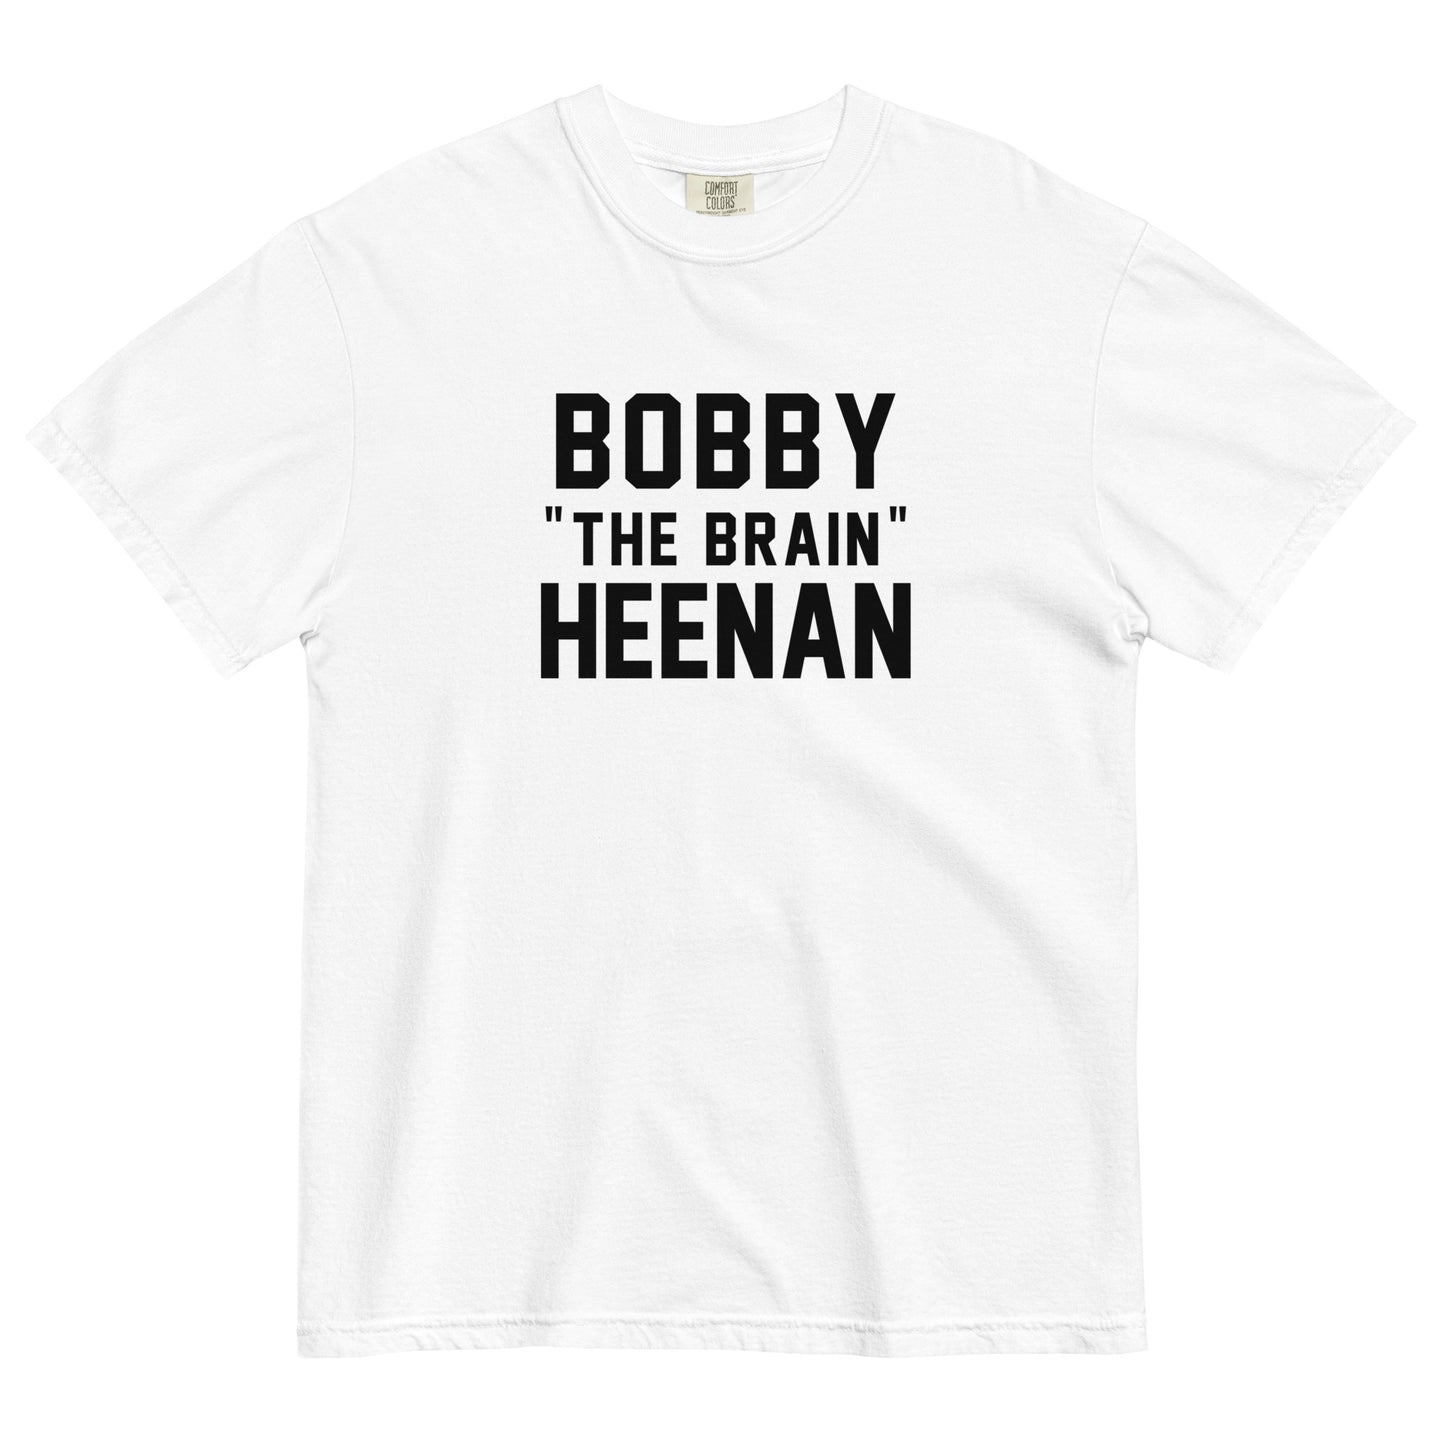 BOBBY "THE BRAIN" HEENAN